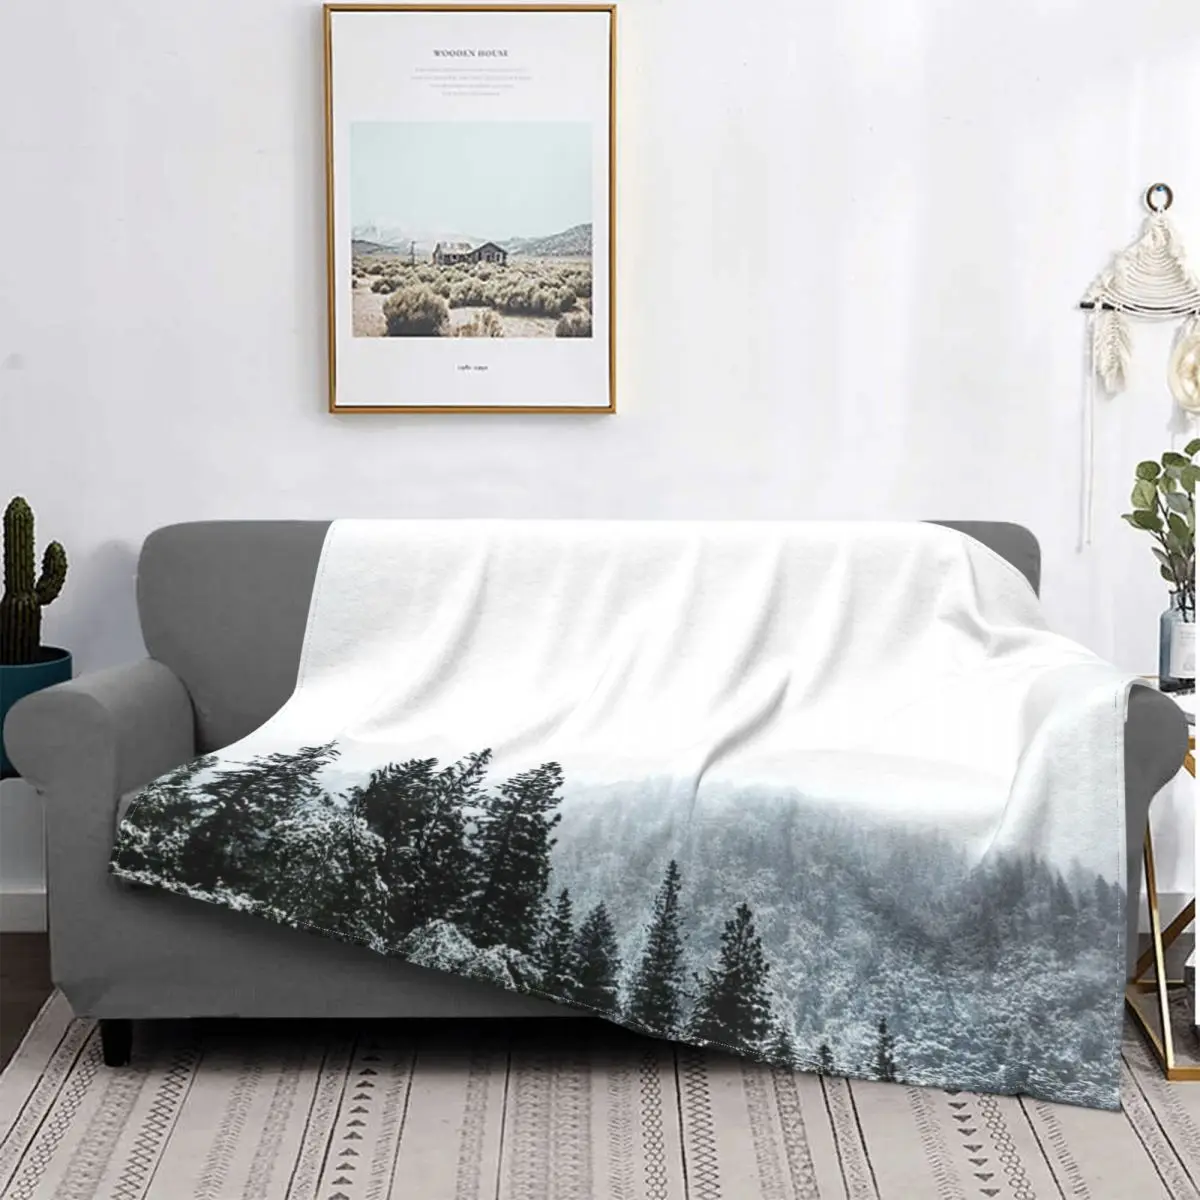 

Снежное одеяло, покрывало для кровати, клетчатое покрывало, полотенце, одеяло, муслиновое одеяло, постельное белье и покрывала